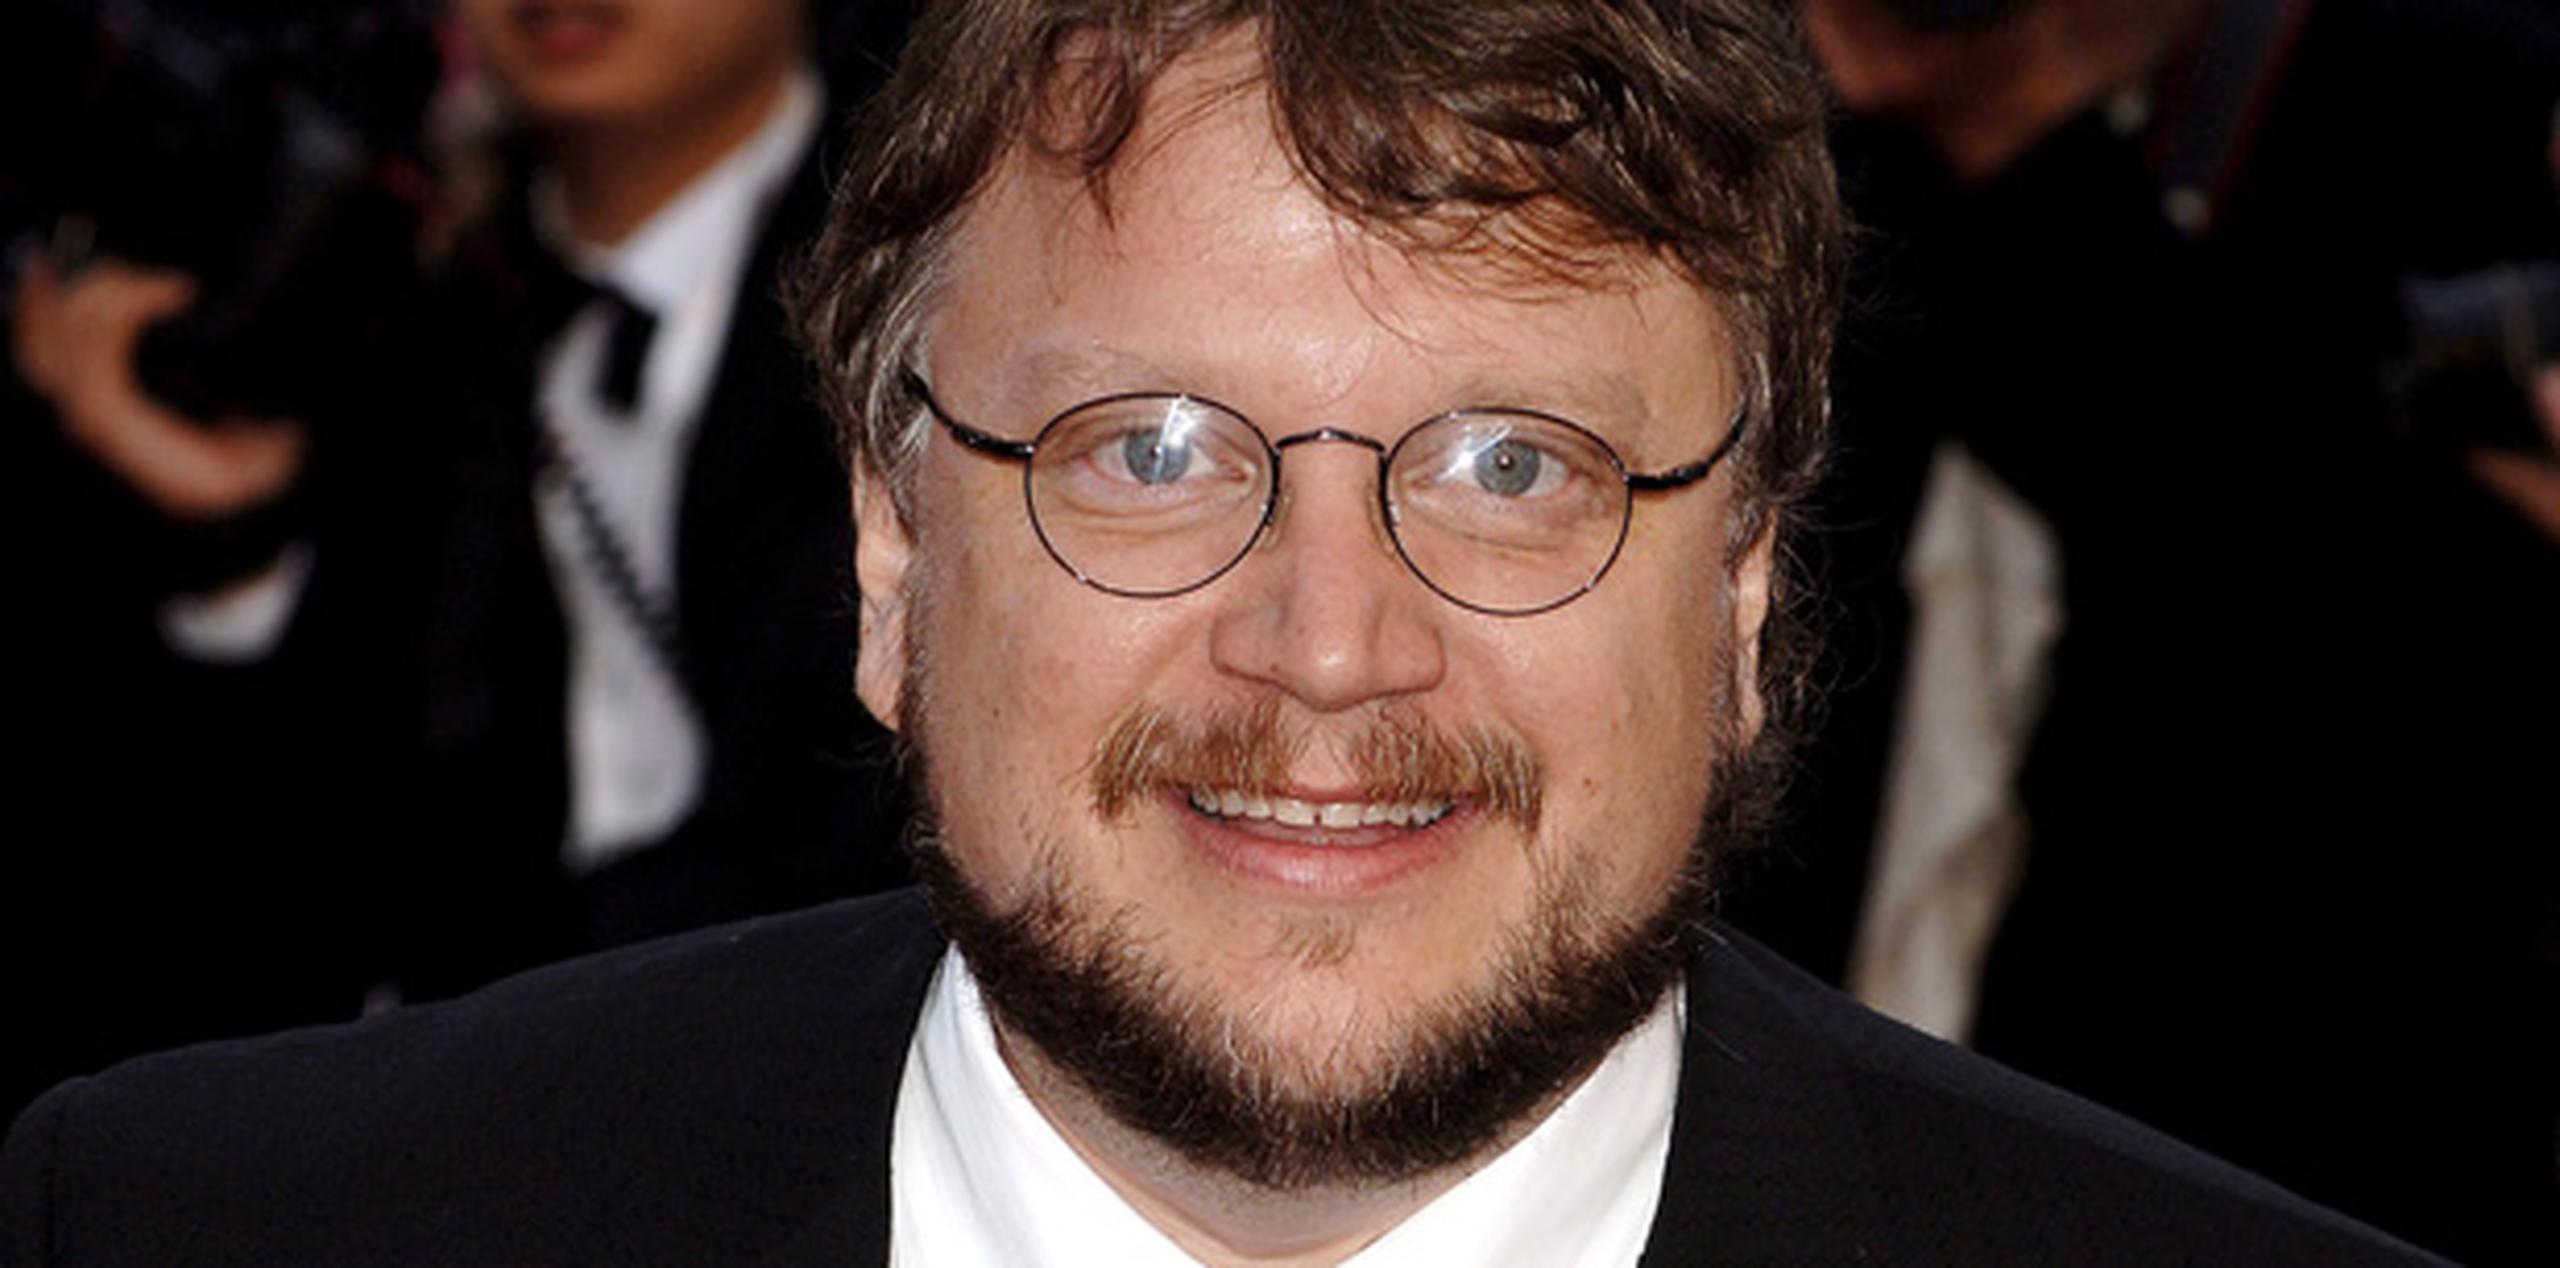 Guillermo del Toro estrenará este año su nuevo filme de terror "Crimson Peak". (EFE)